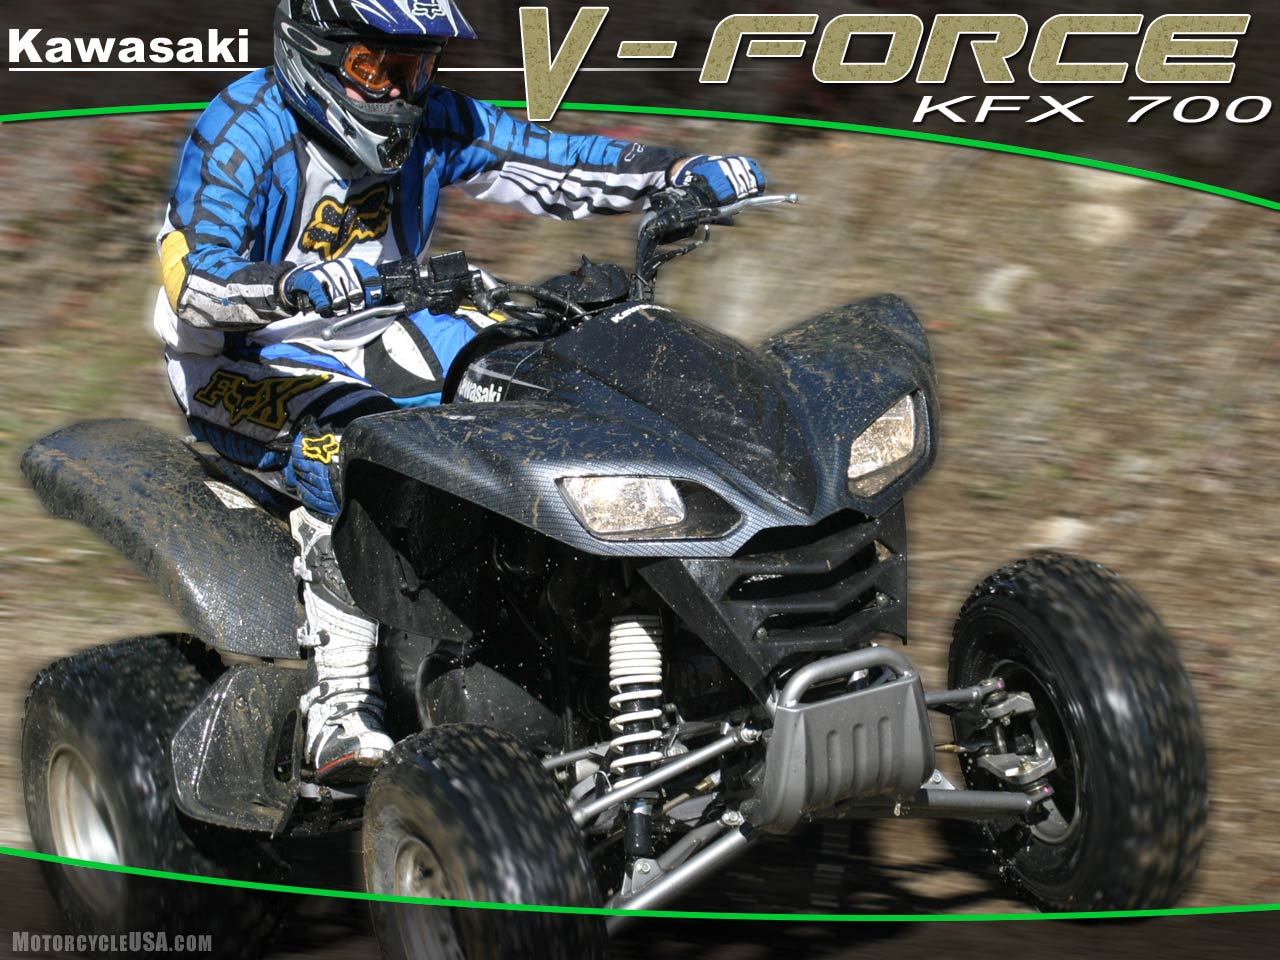 2004款川崎V Force 700摩托车图片1